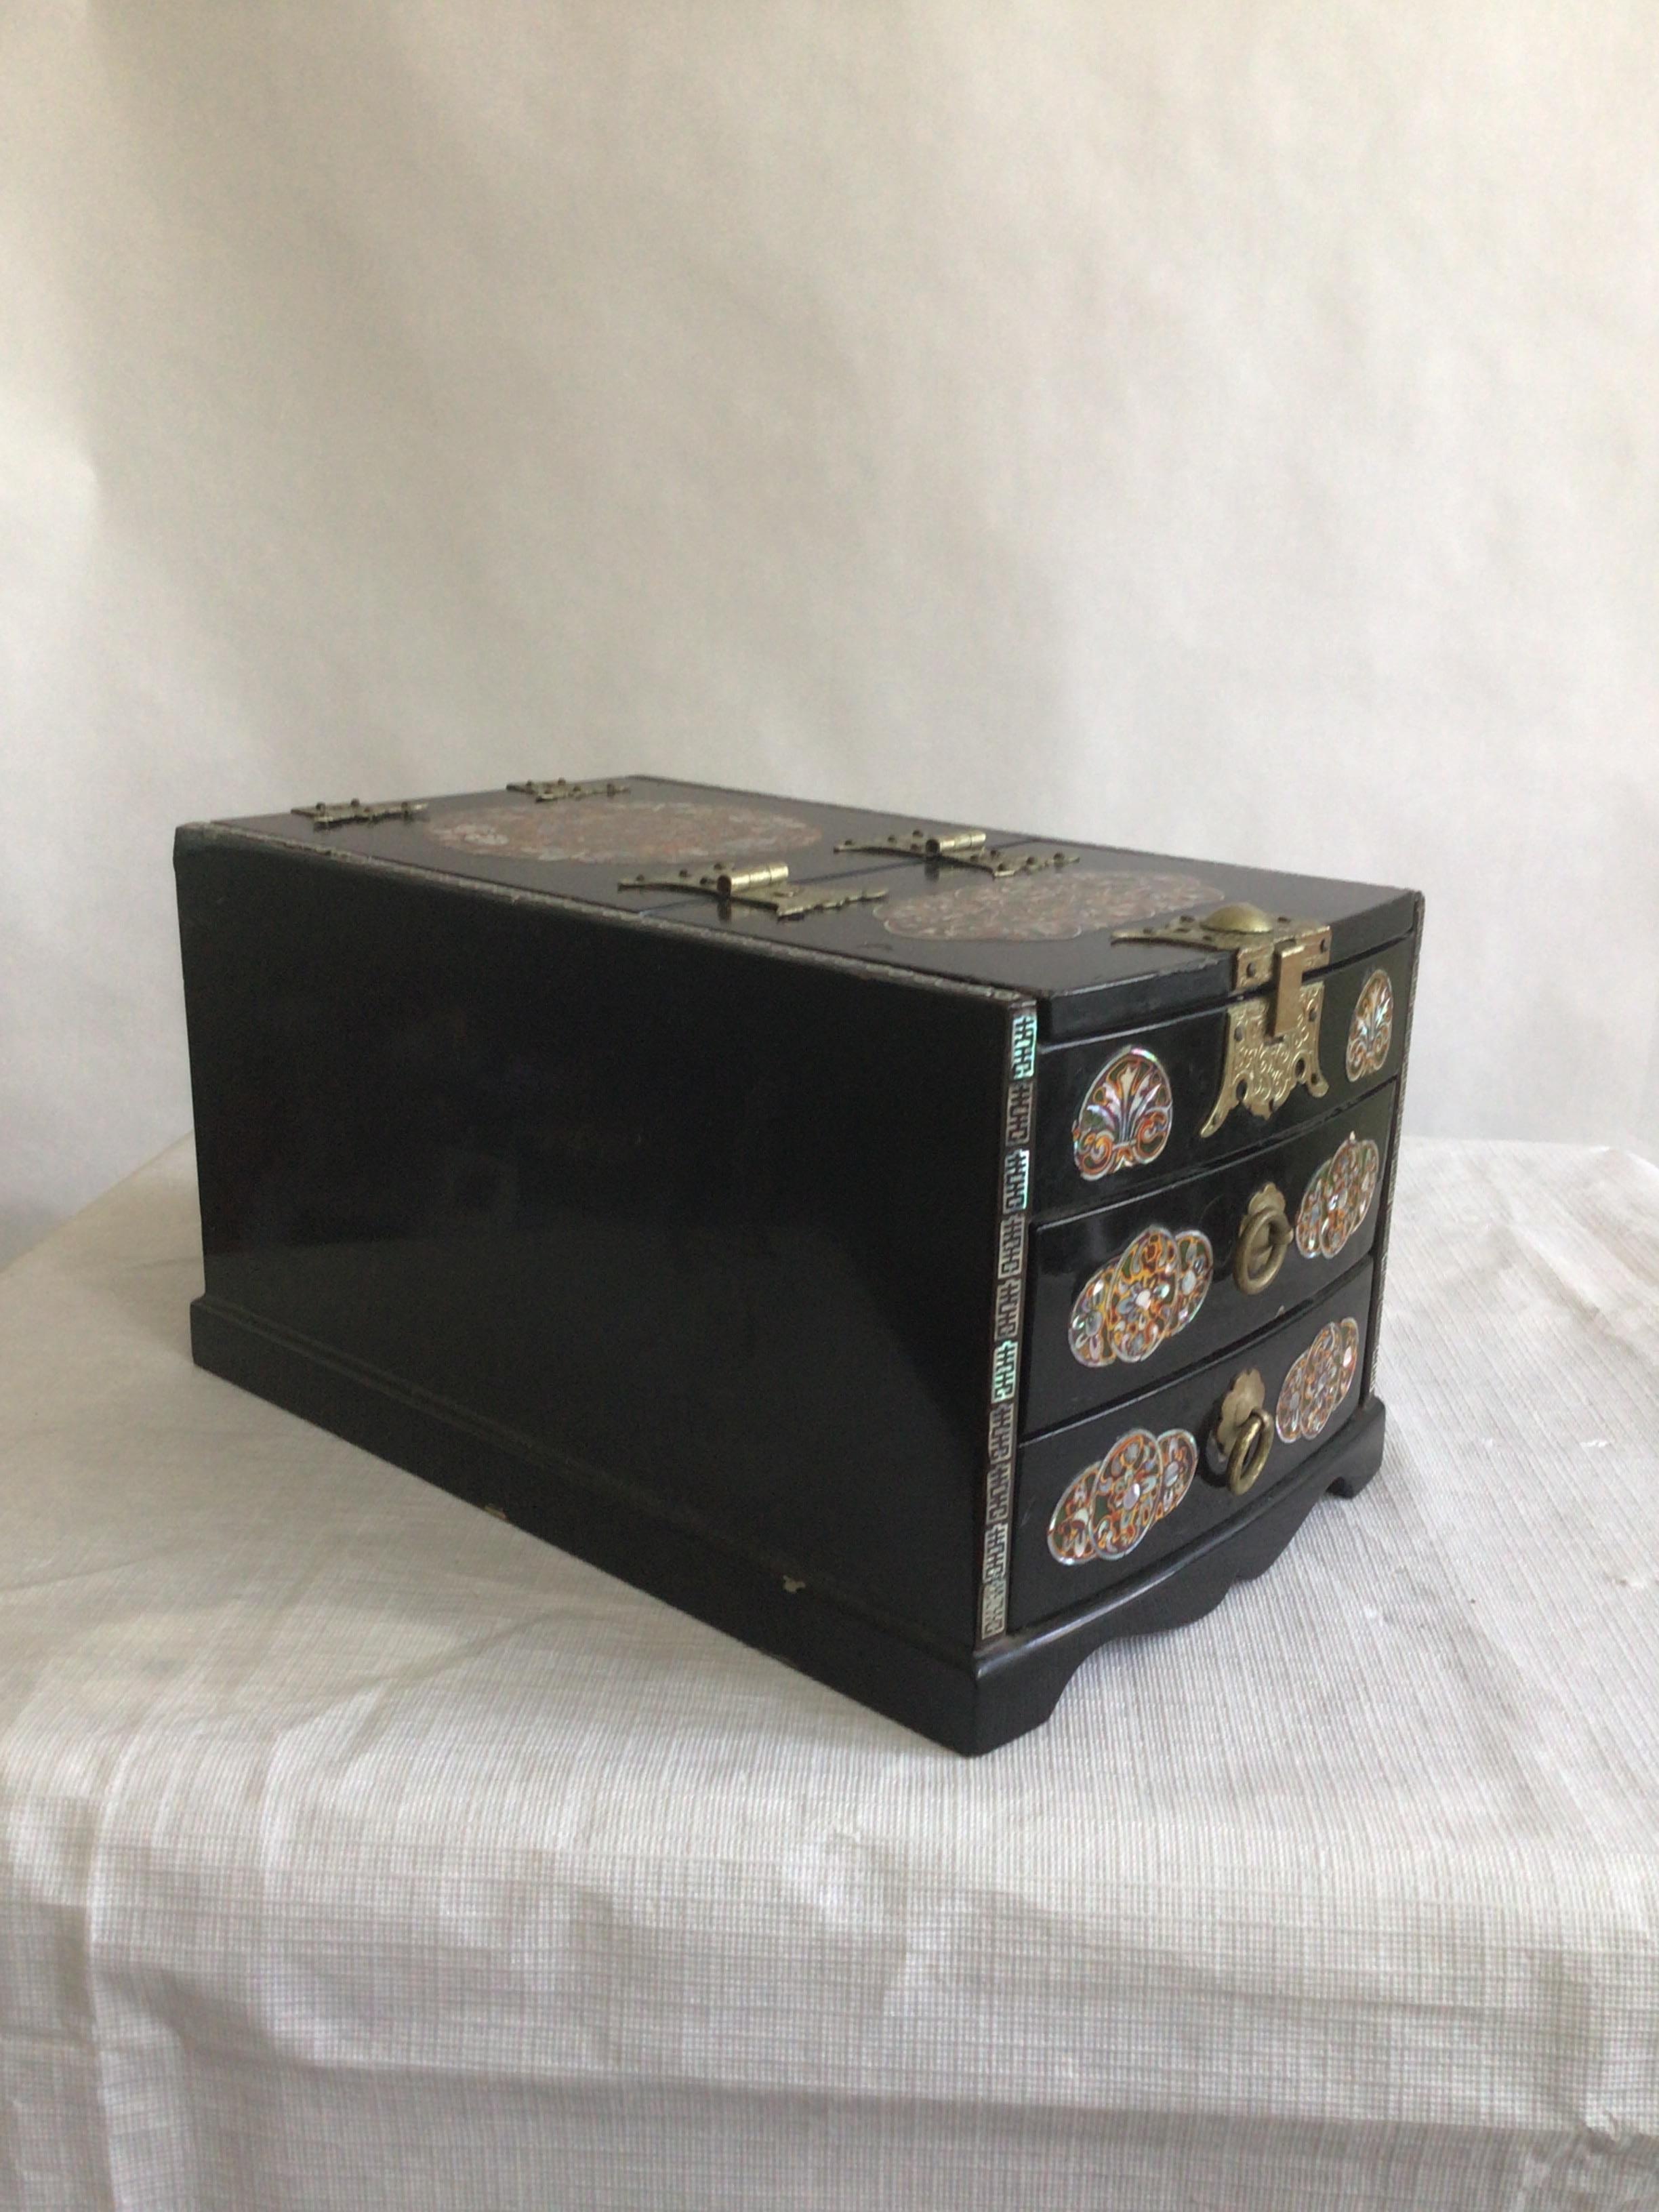 1950er Jahre Schwarz lackiertes Holz und Perlmutt Intarsien kleine Dressing Box
Zwei mit Filz gefütterte Schubladen
Spiegel auf der Unterseite des Deckels
Kleiner Knick an der Spitze
